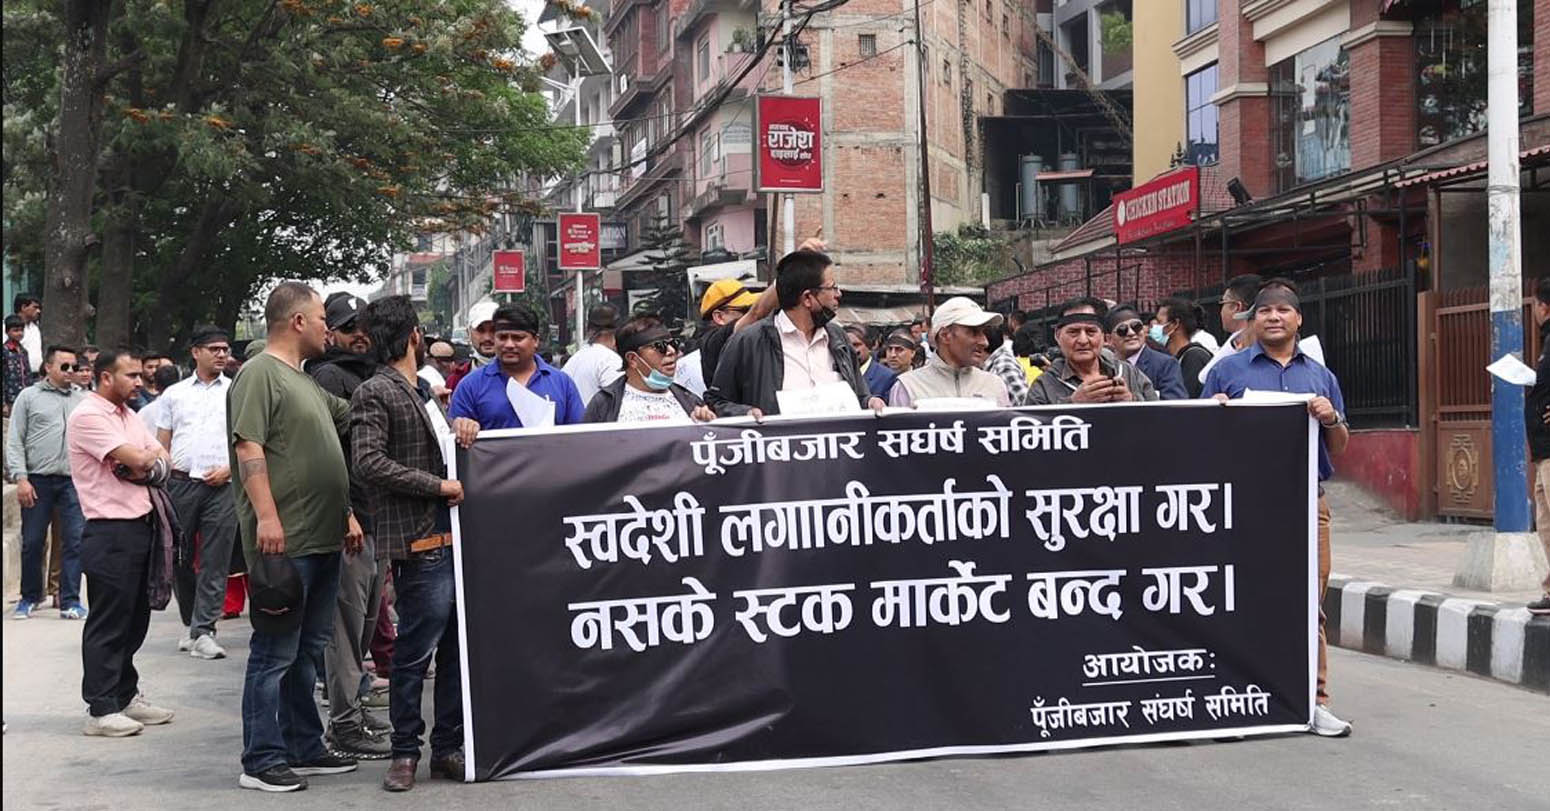 पुँजी बजारमा स्वदेशी लगानीकर्ताको सुरक्षाको माग गर्दै काठमाडौंमा सरकारबिरुद्ध प्रदर्शन